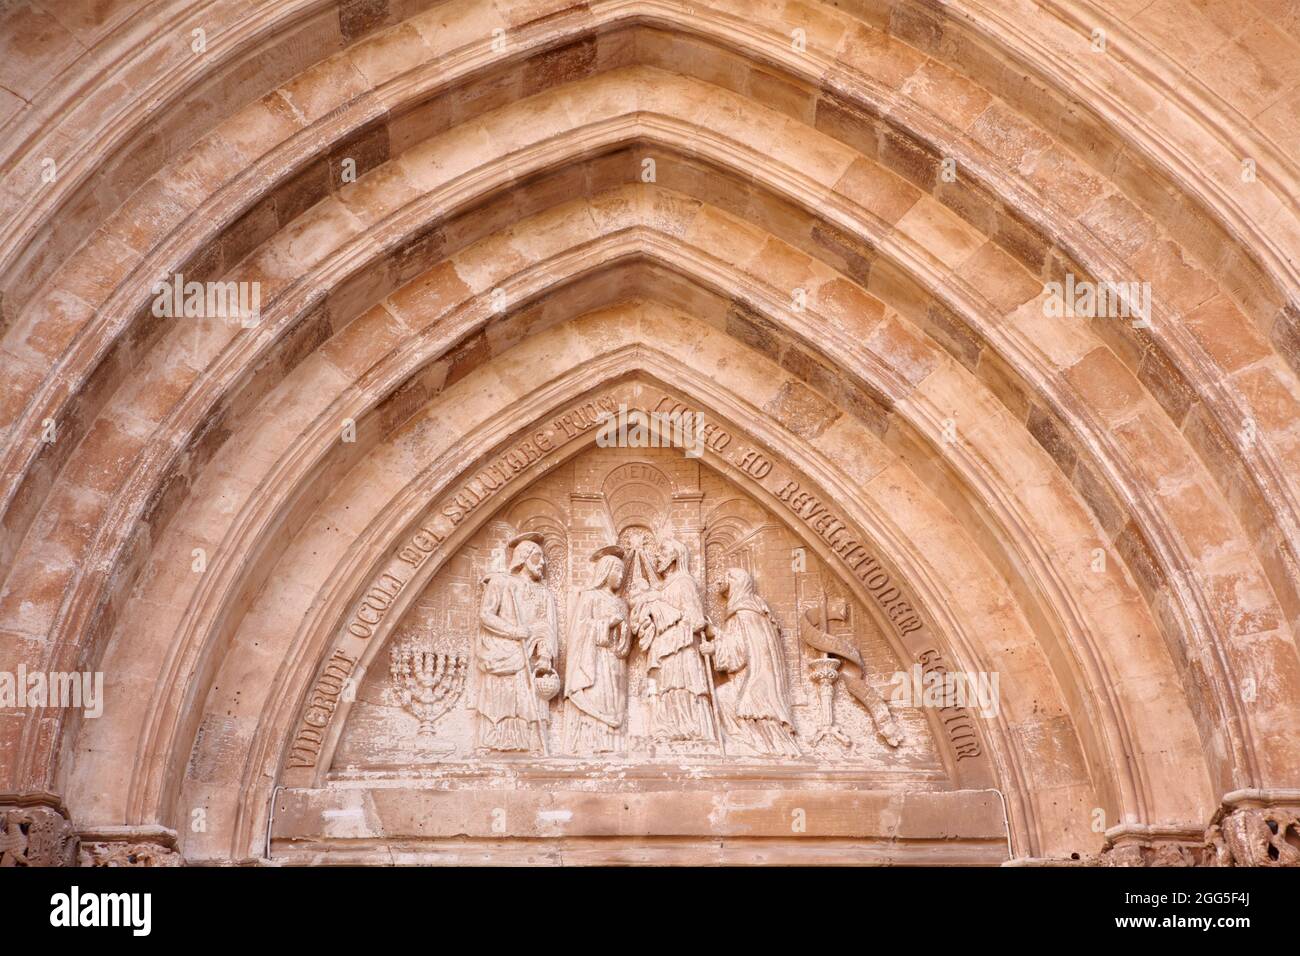 Le portail de la cathédrale de ciutadella de menorca, Baléares, Espagne Banque D'Images